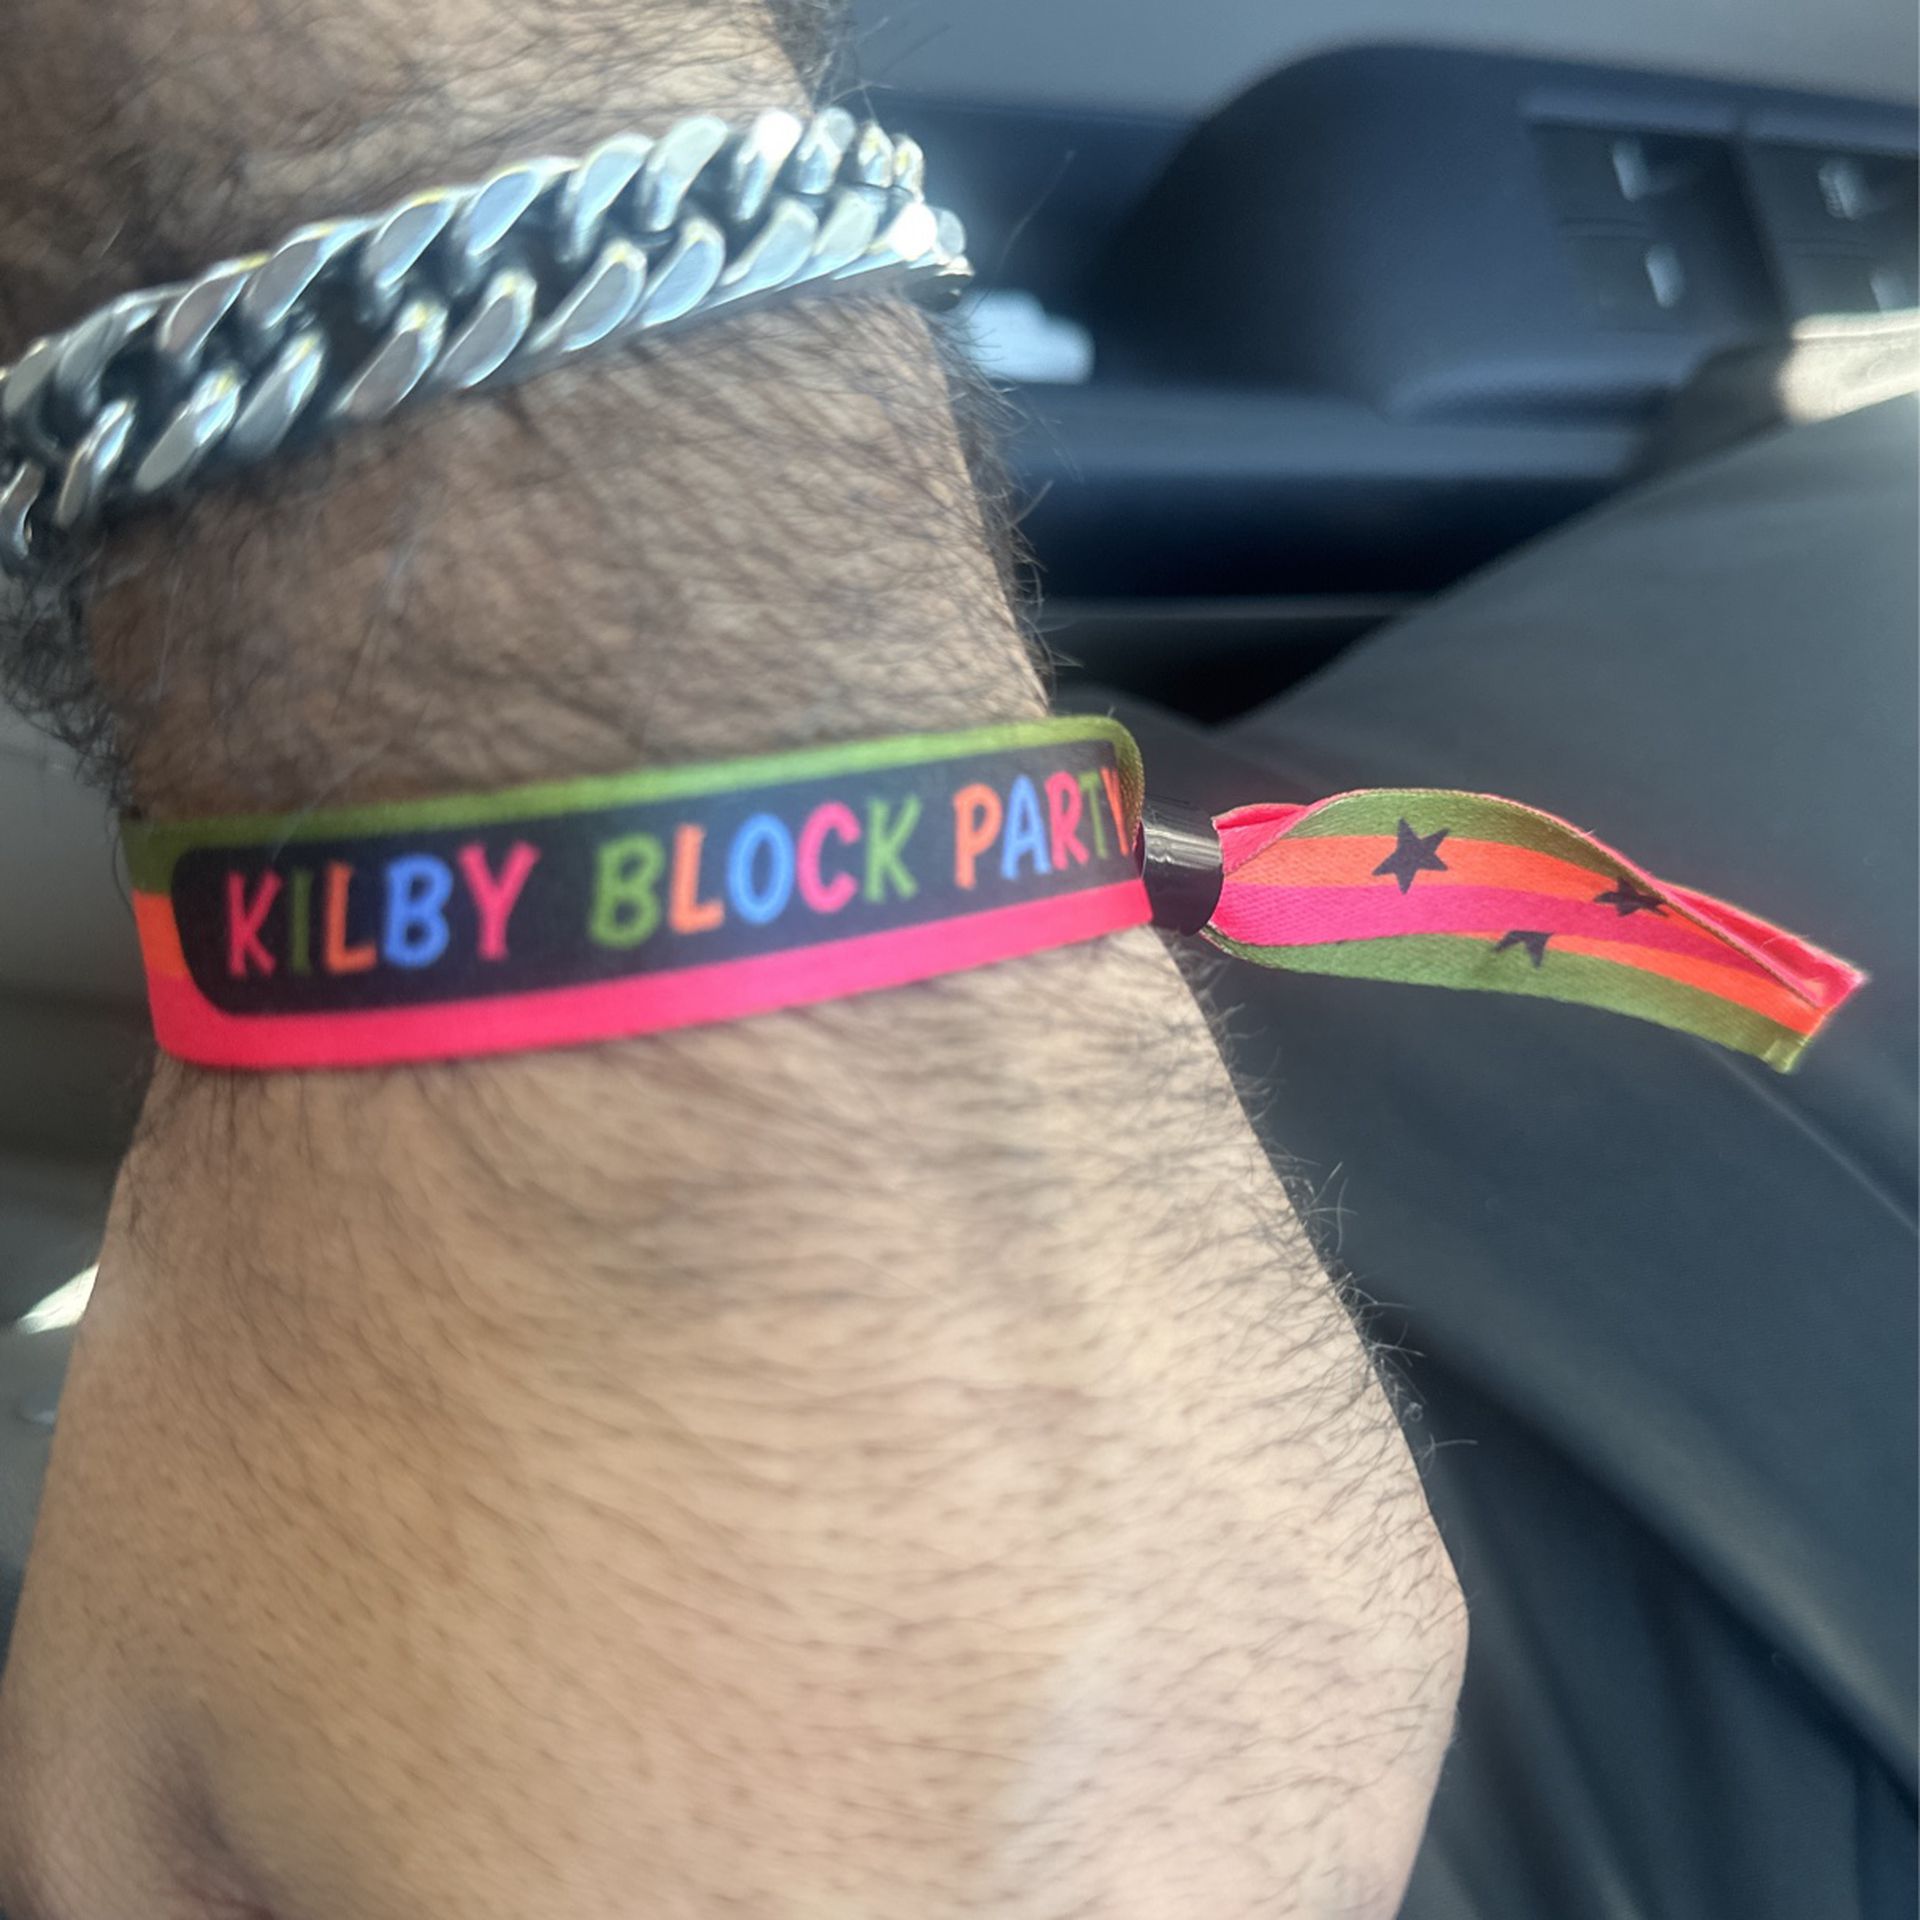 Kilby block party Access